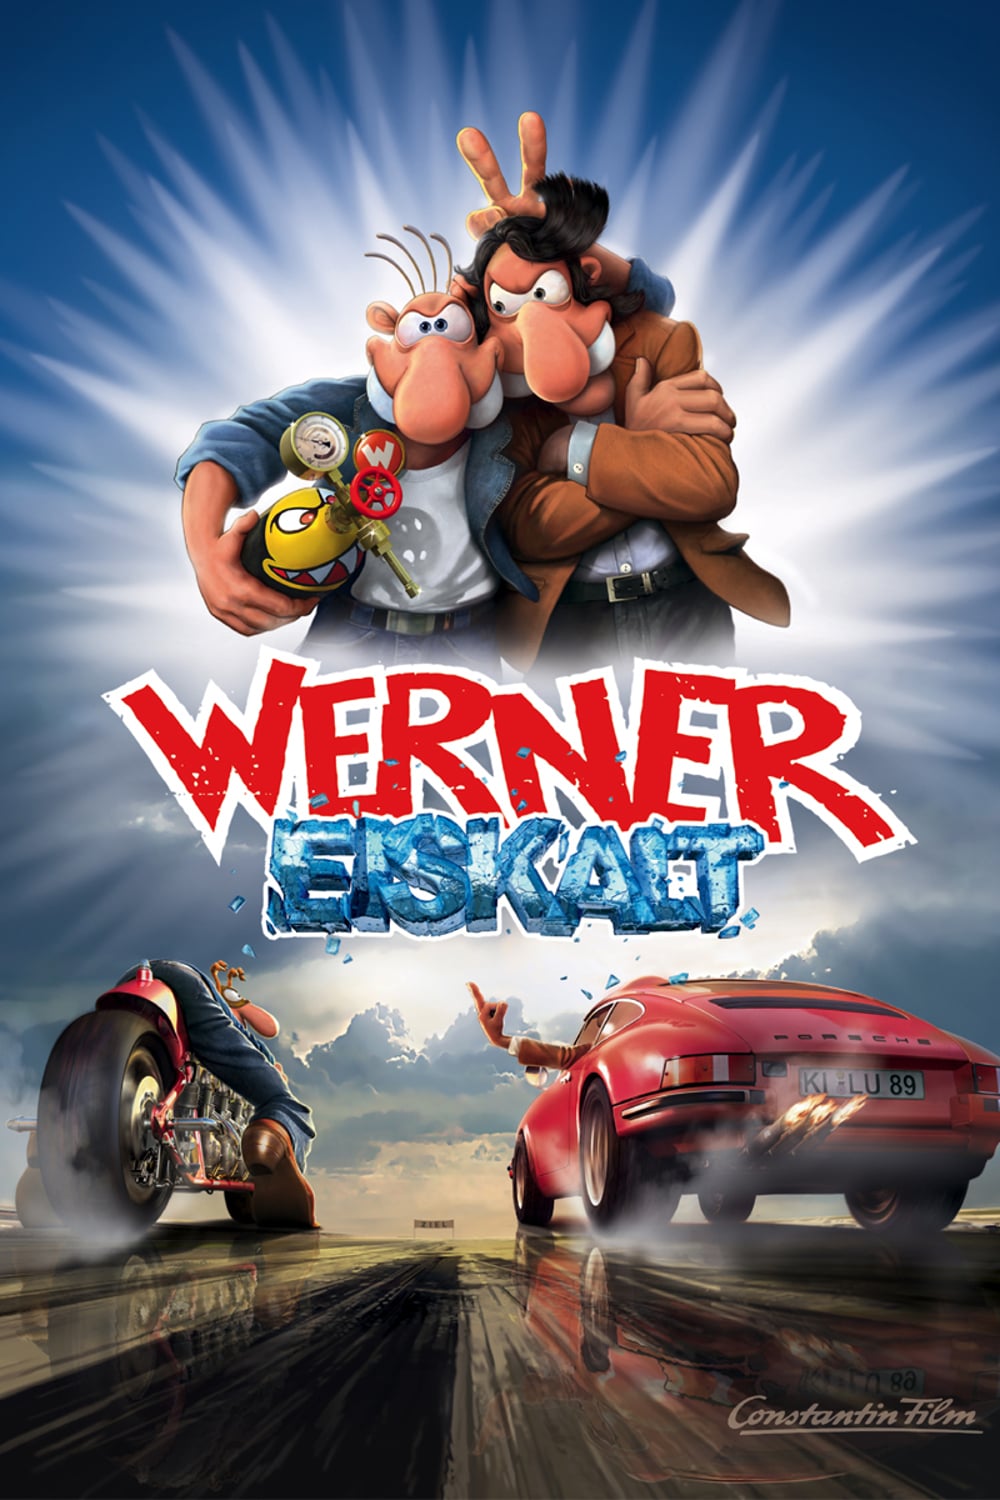 Plakat von "Werner - Eiskalt!"